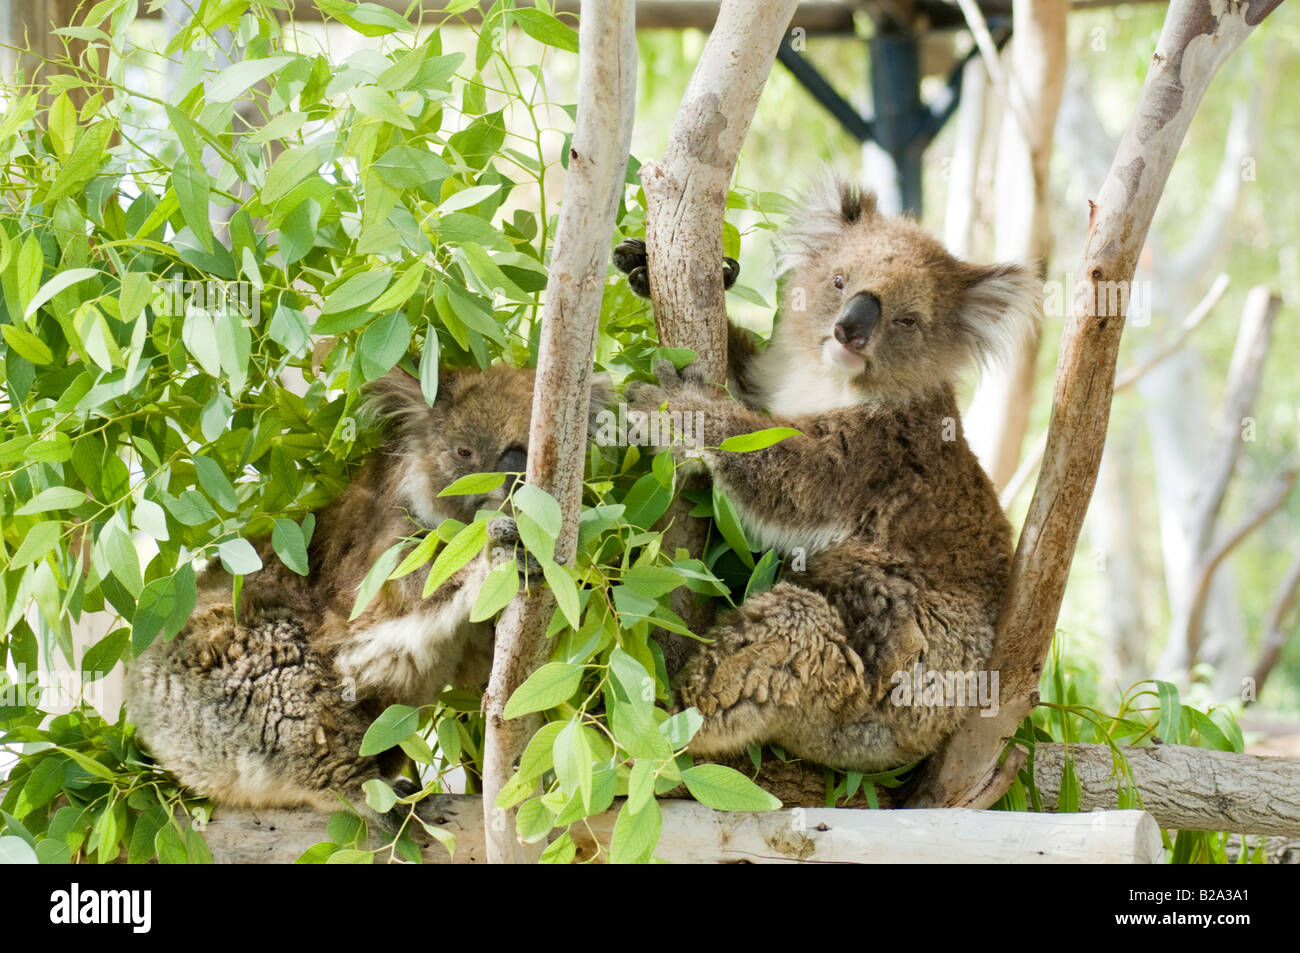 Two Female Koala Phascolarctos cinereus in an Eucalyptus tree Stock Photo